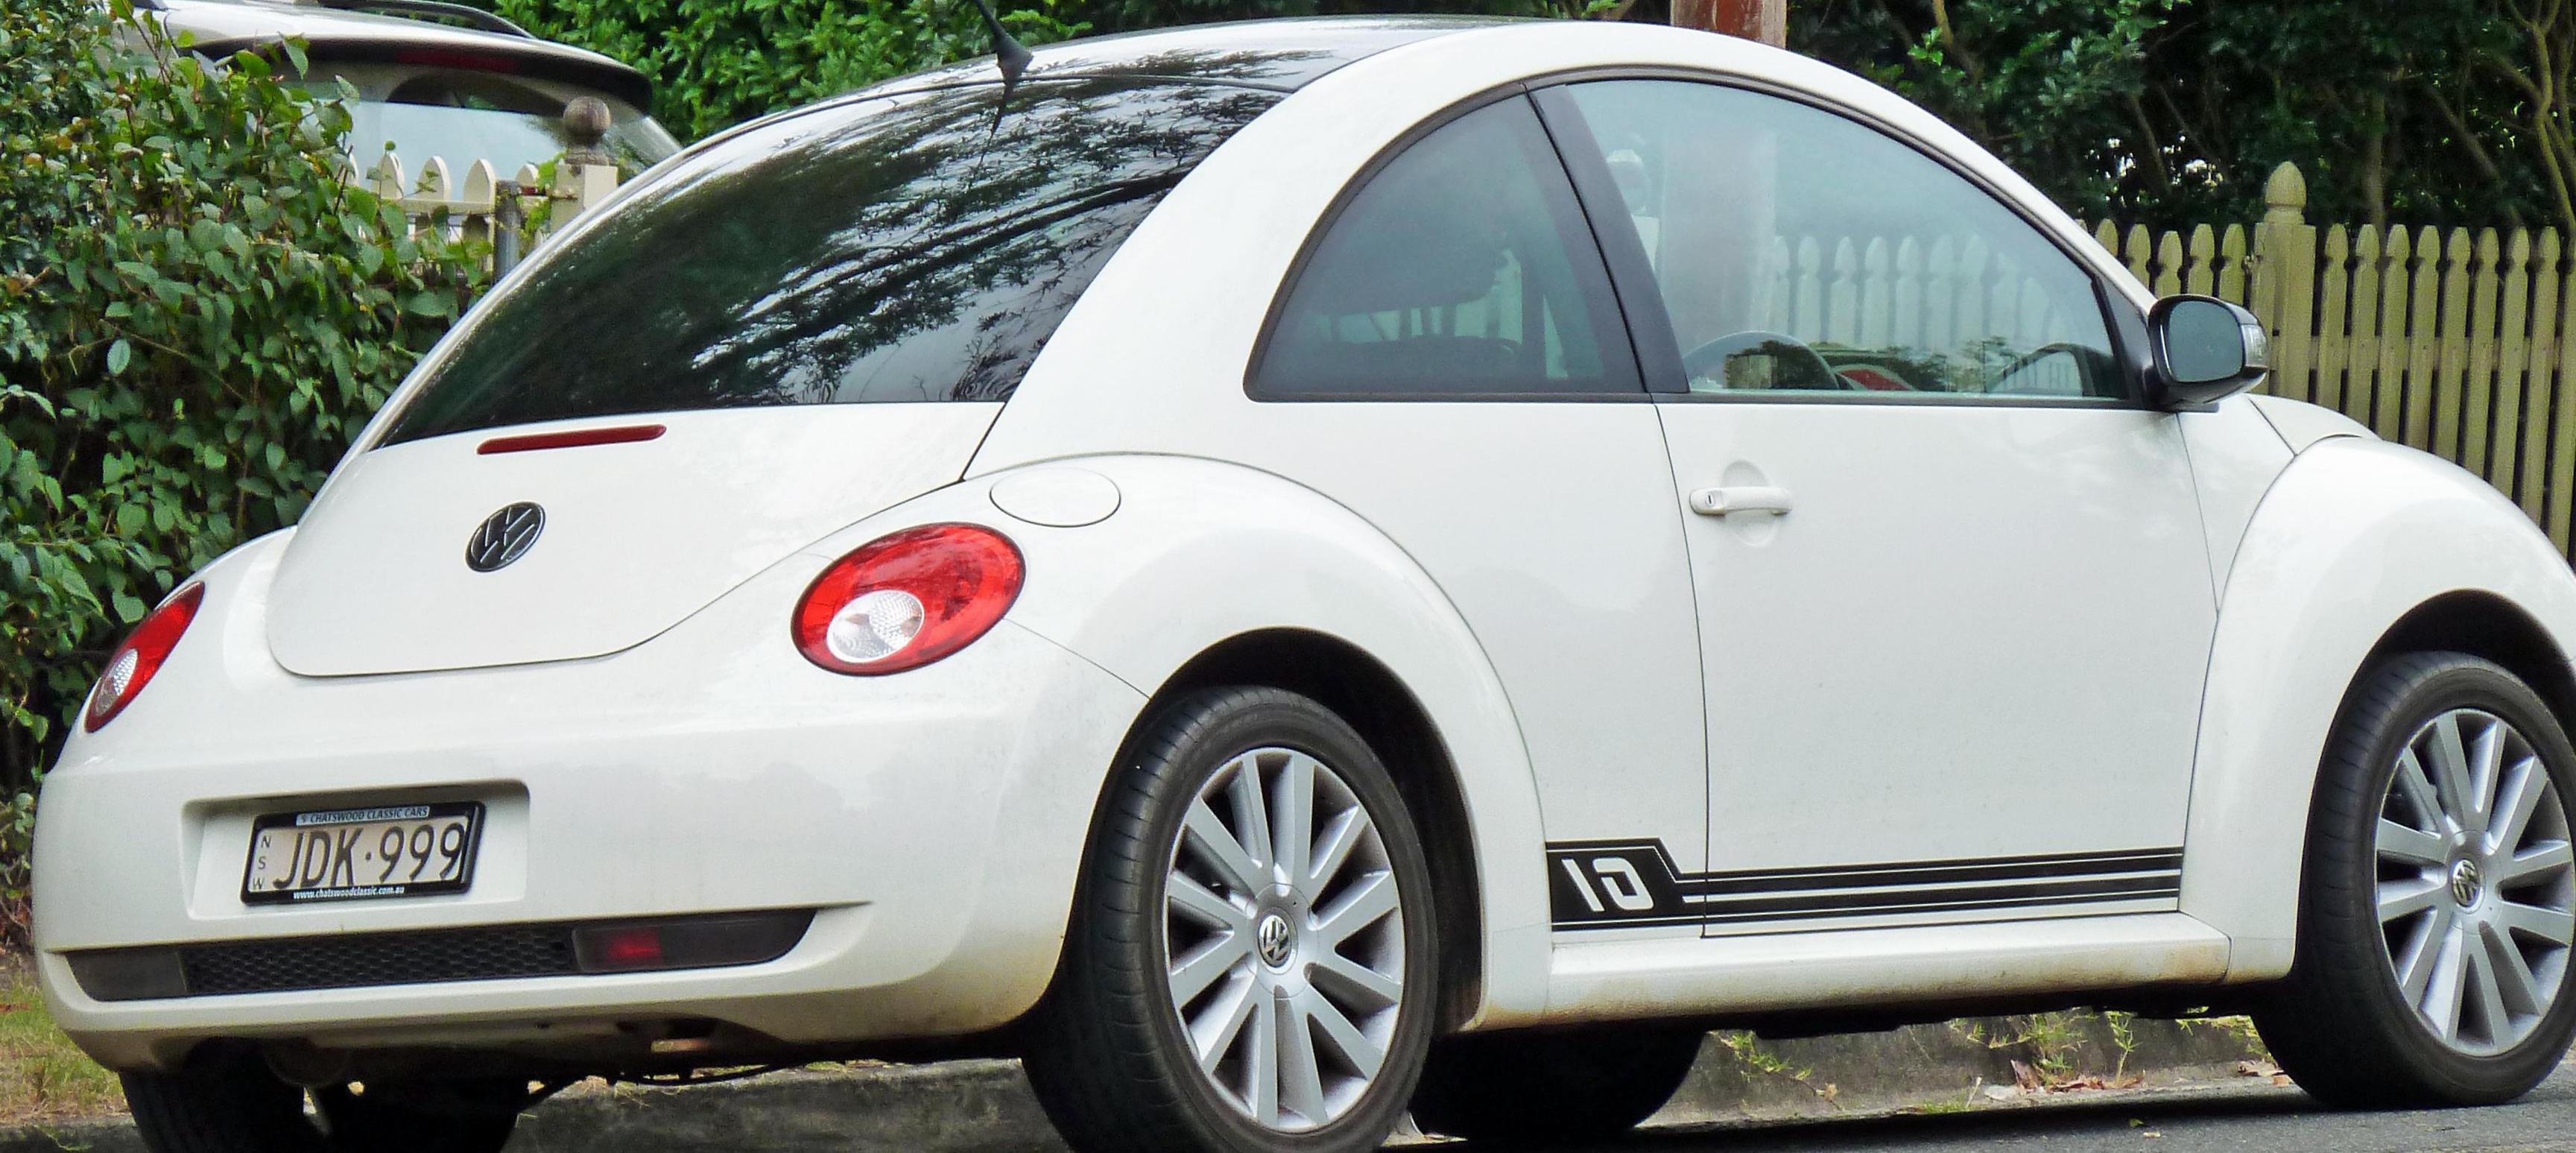 Beetle Volkswagen Characteristics 2010